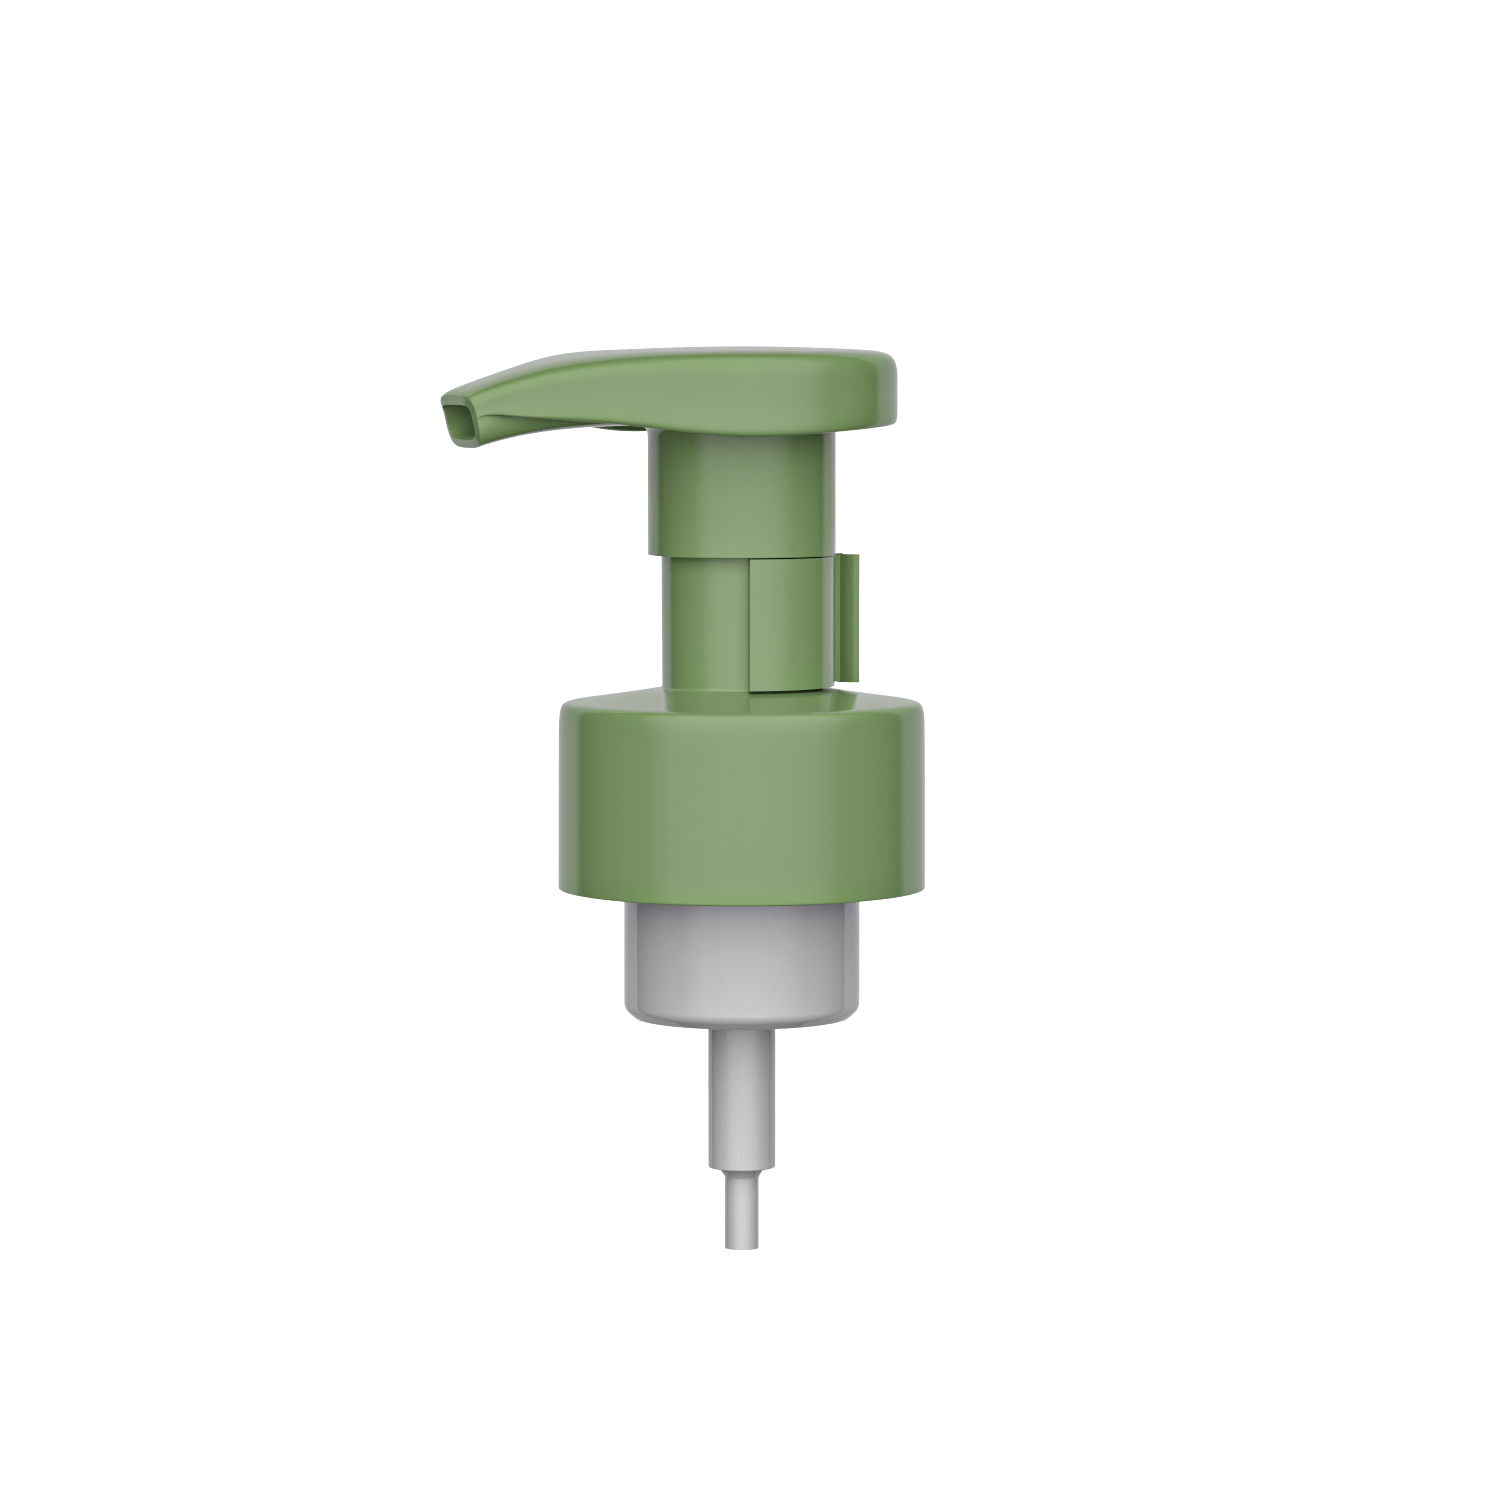 HD-502C 43/410 bomba de espuma de 0.8CC para jabón de manos, champú, gel de baño